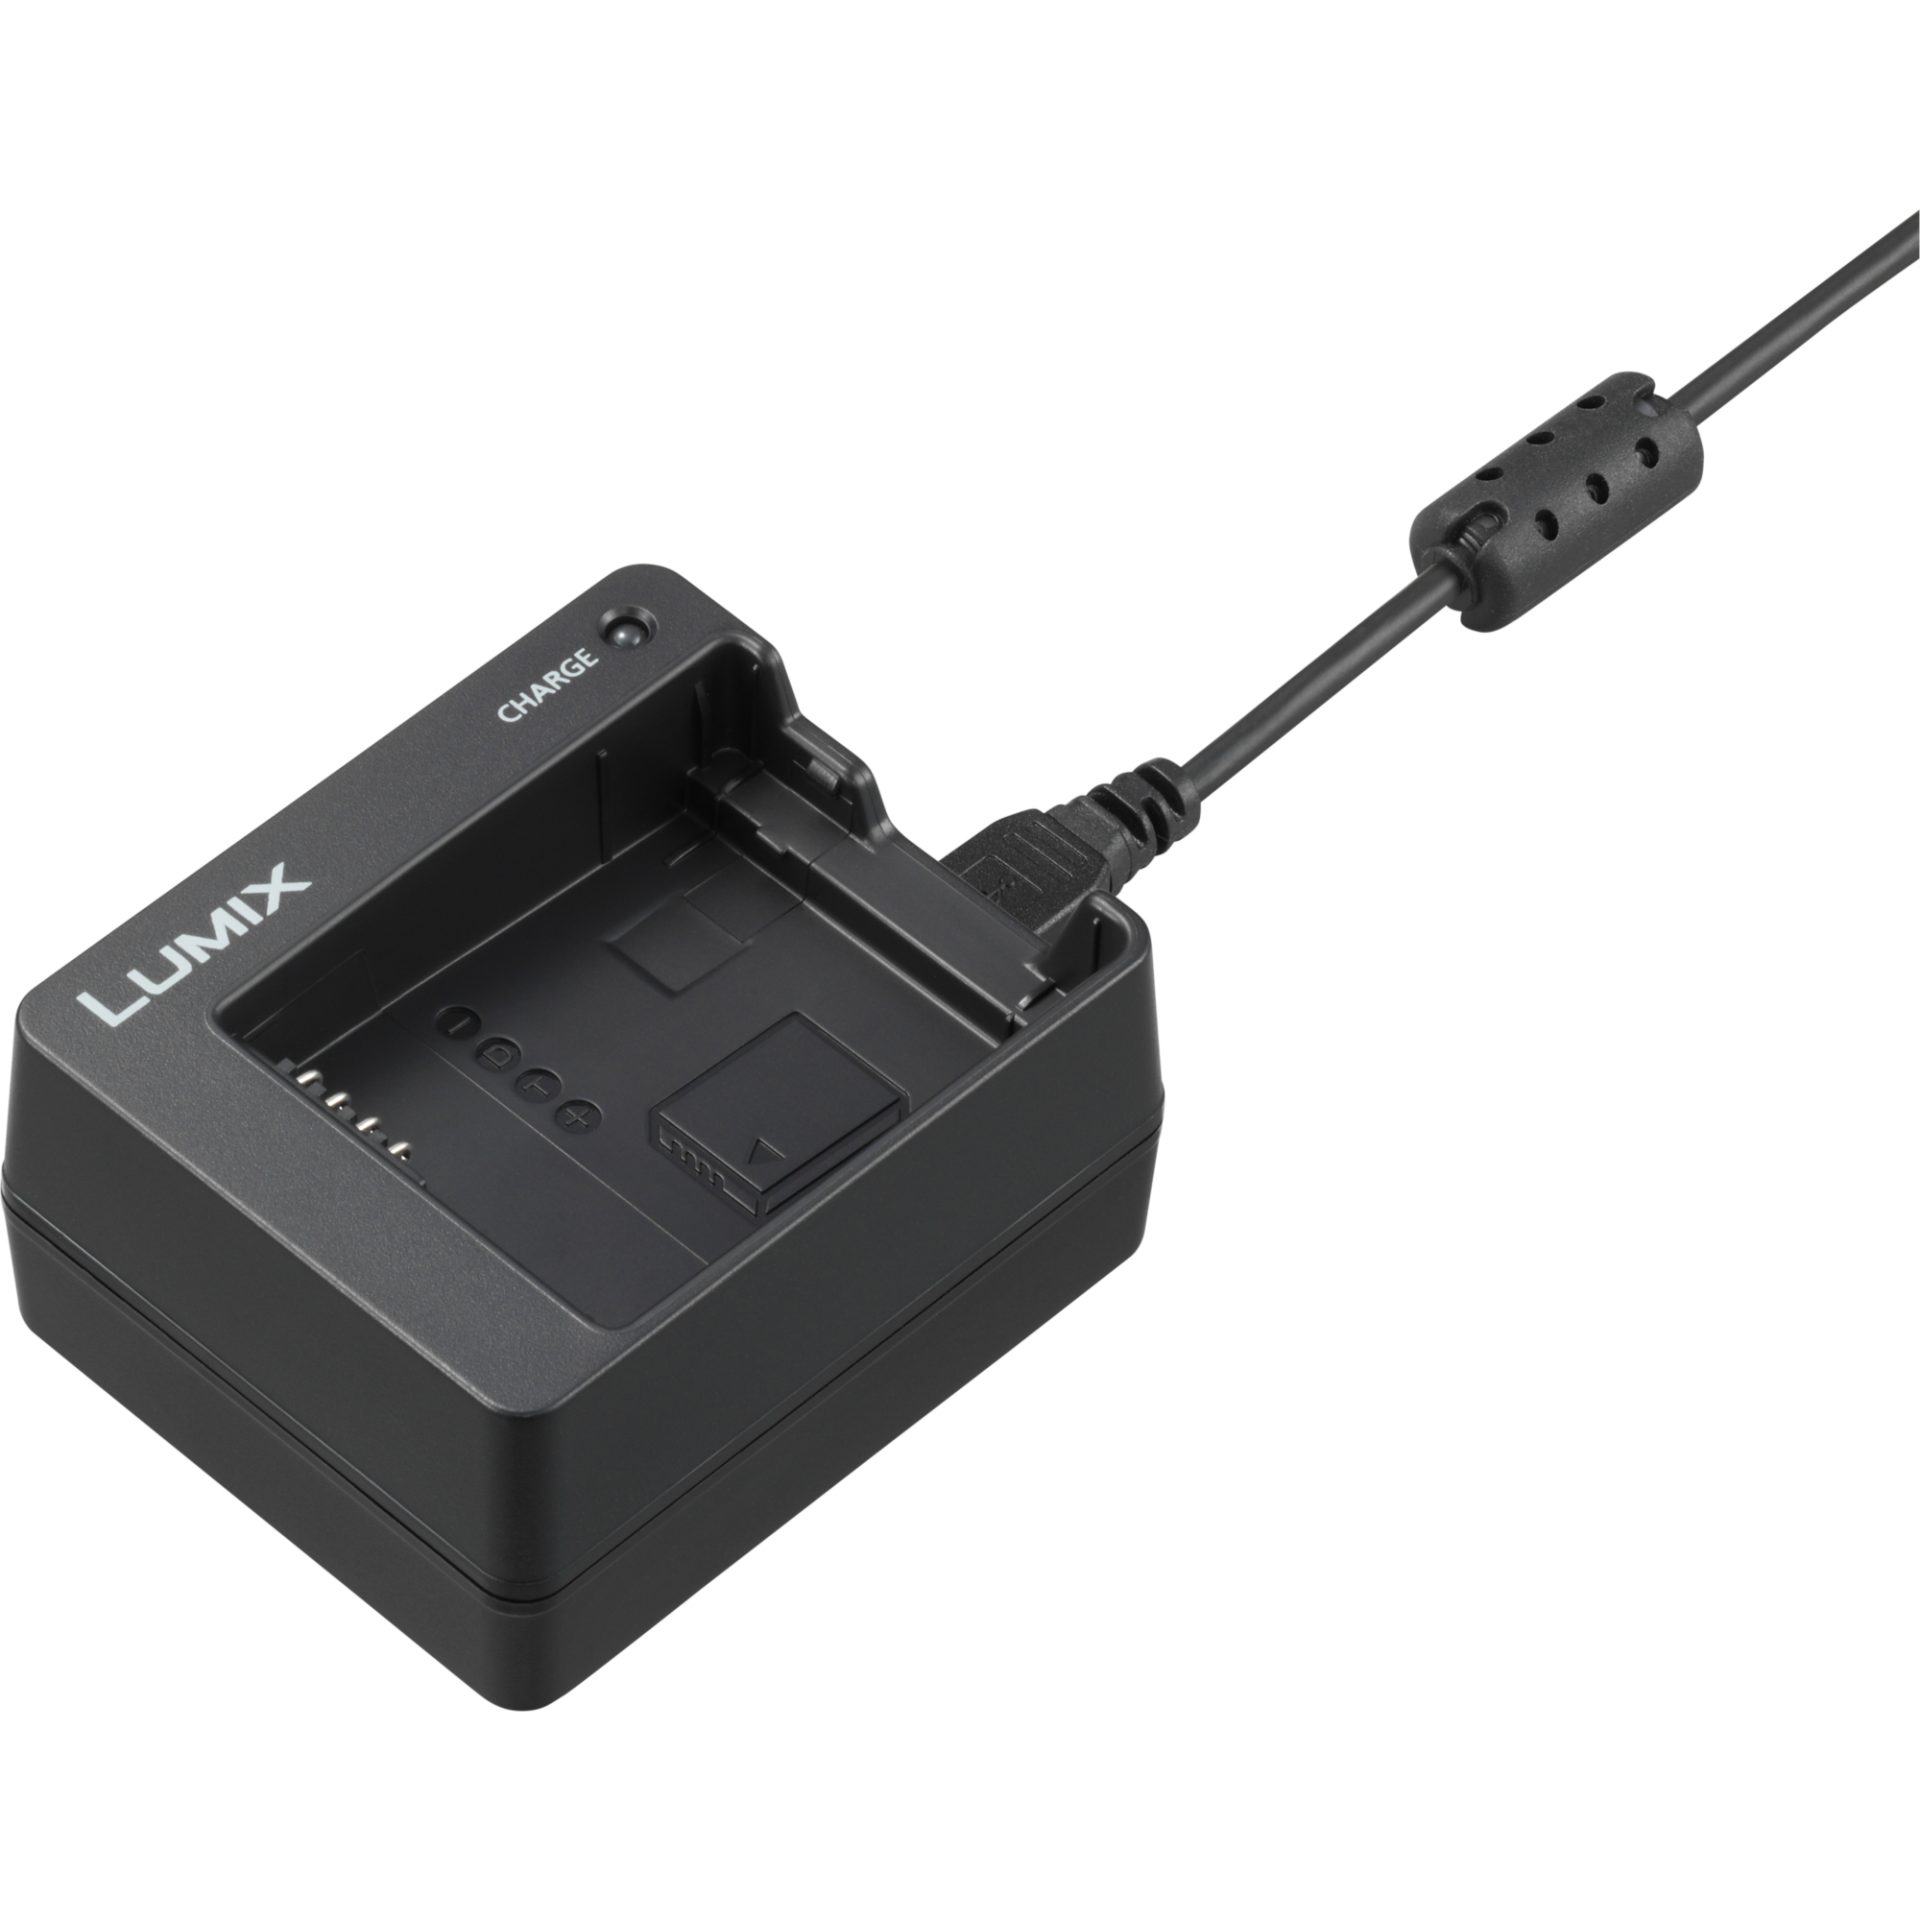 Panasonic DMW-BTC12 nabíječka baterií (USB nabíjení, DMW-BLC12/BLG10/BLH7 kompatibilní)